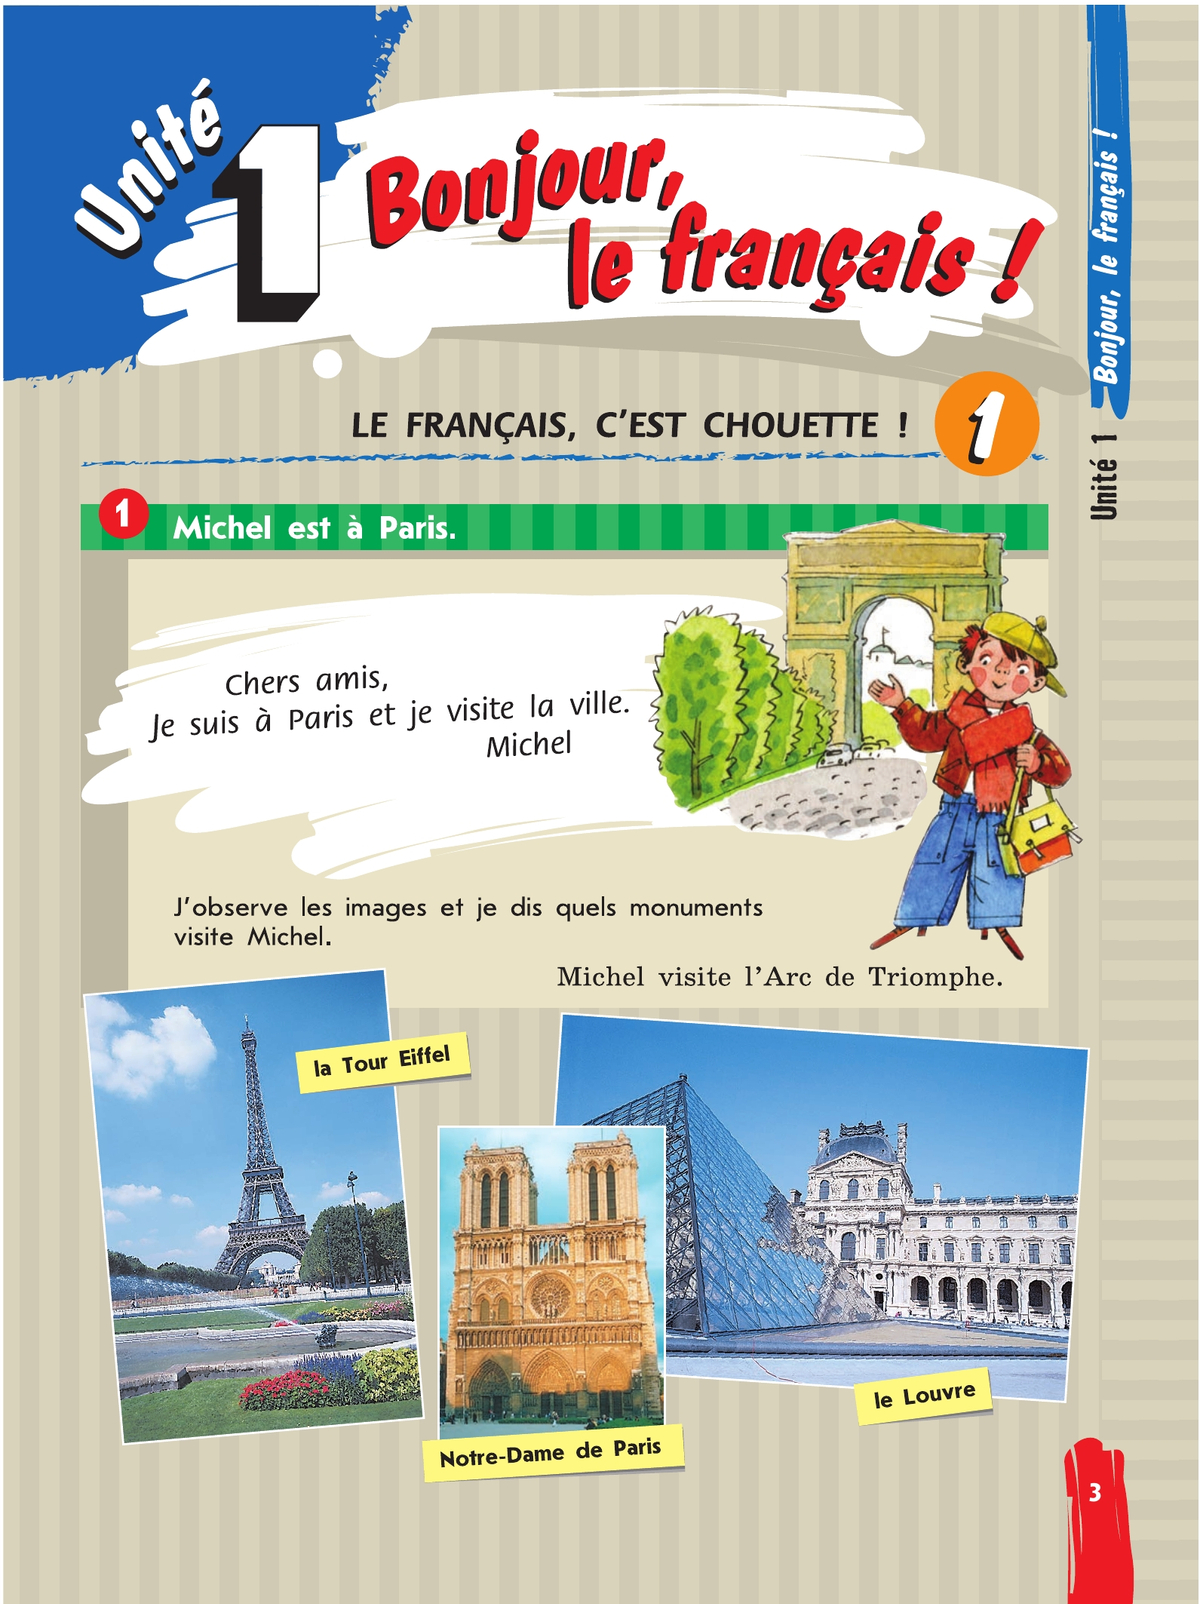 Французский язык. Второй иностранный язык. 5 класс. Учебник. В 2 ч. Часть 1 6